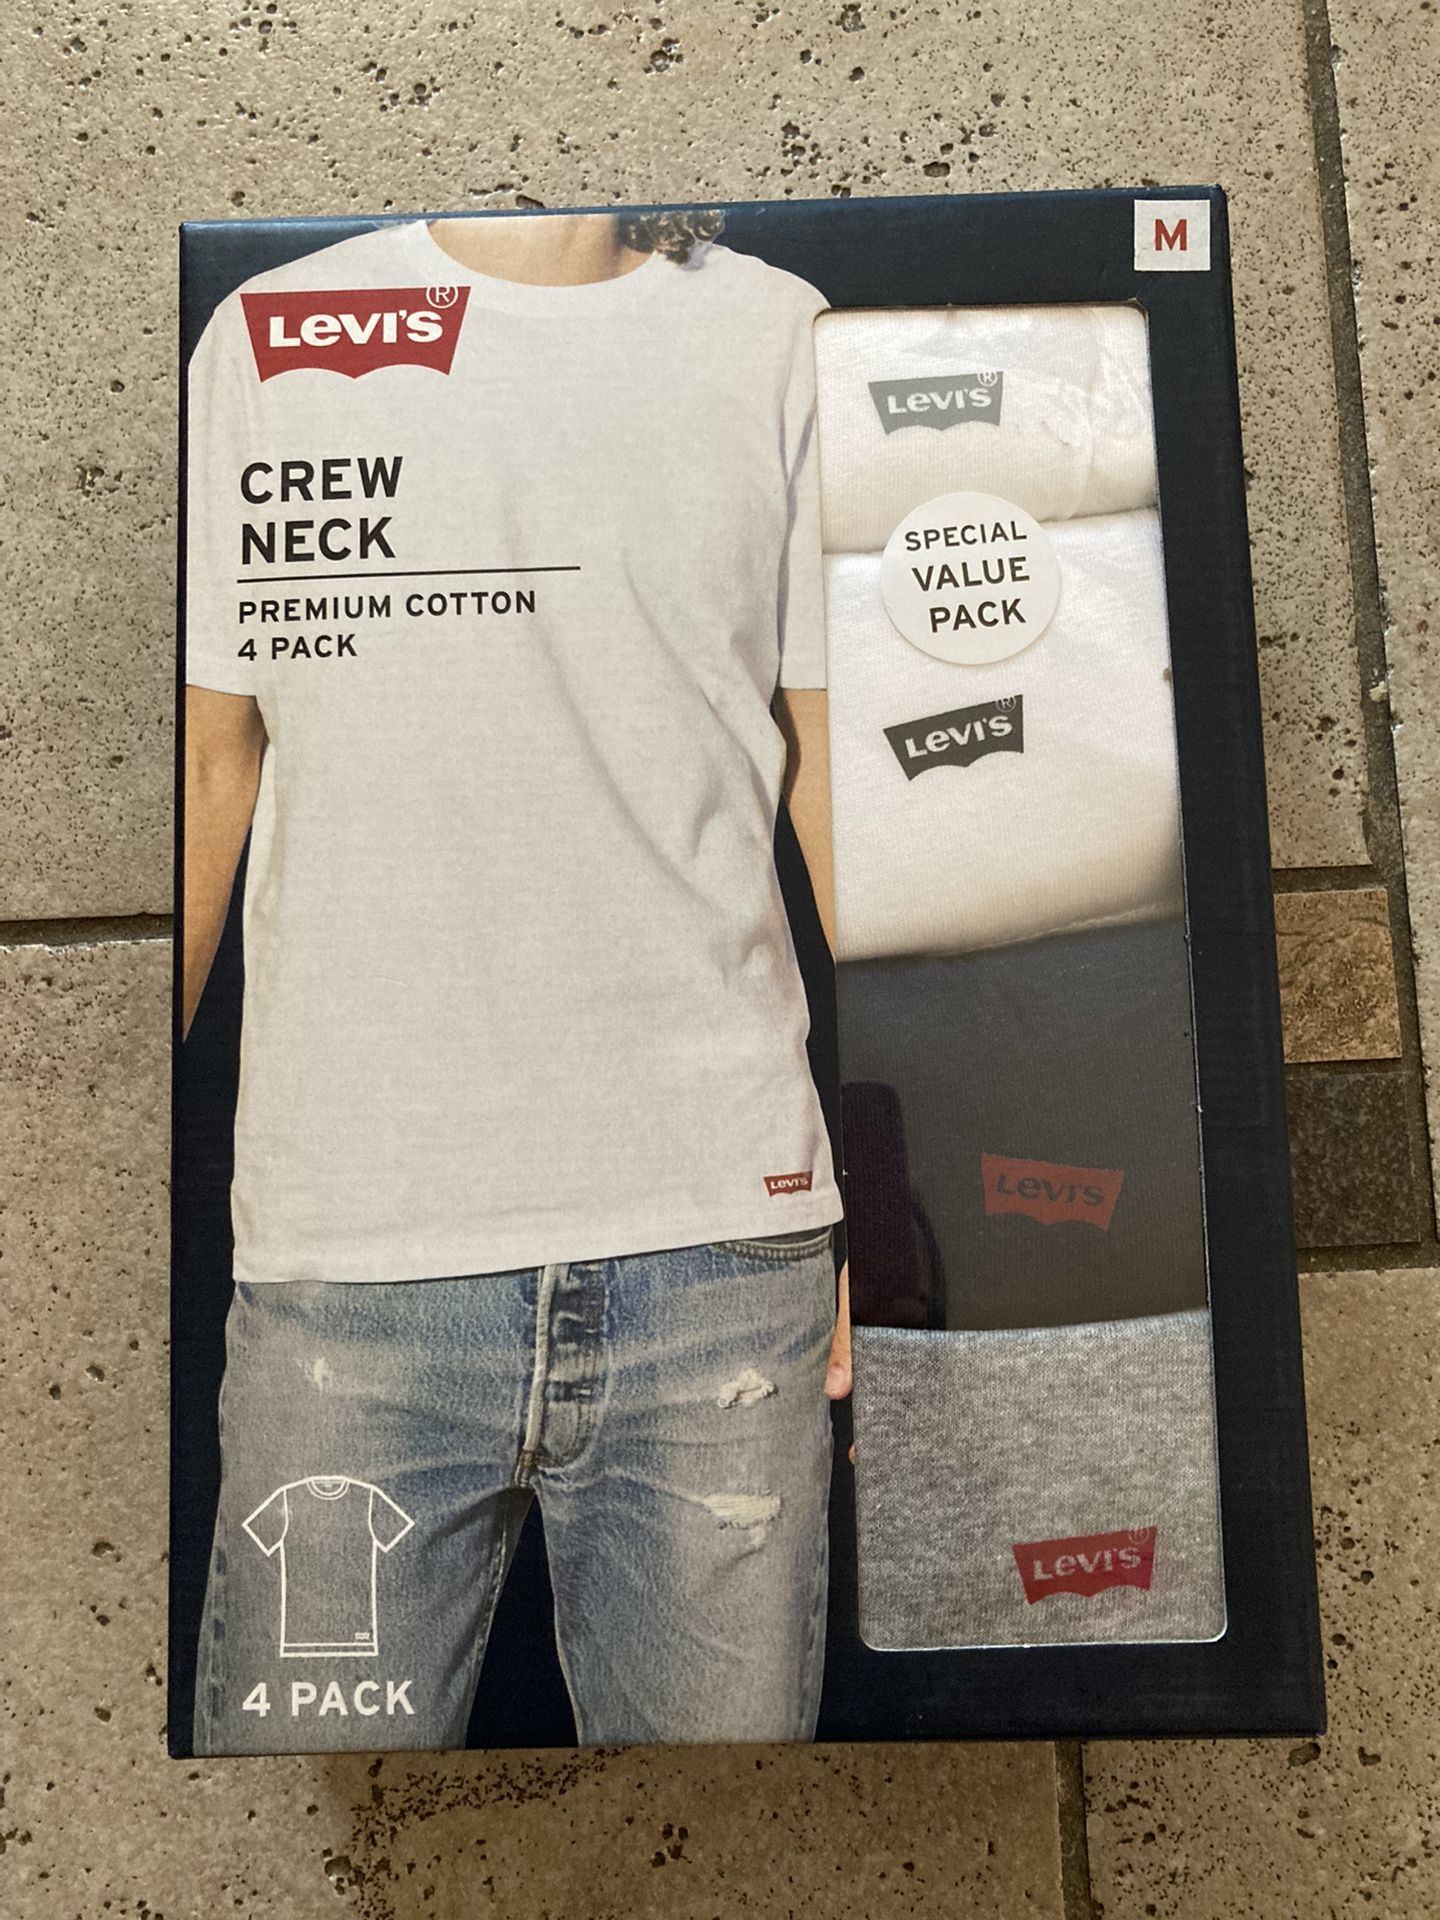 NWT Levi’s Crew Neck Premium Cotton T-shirt 4 Pack Size M